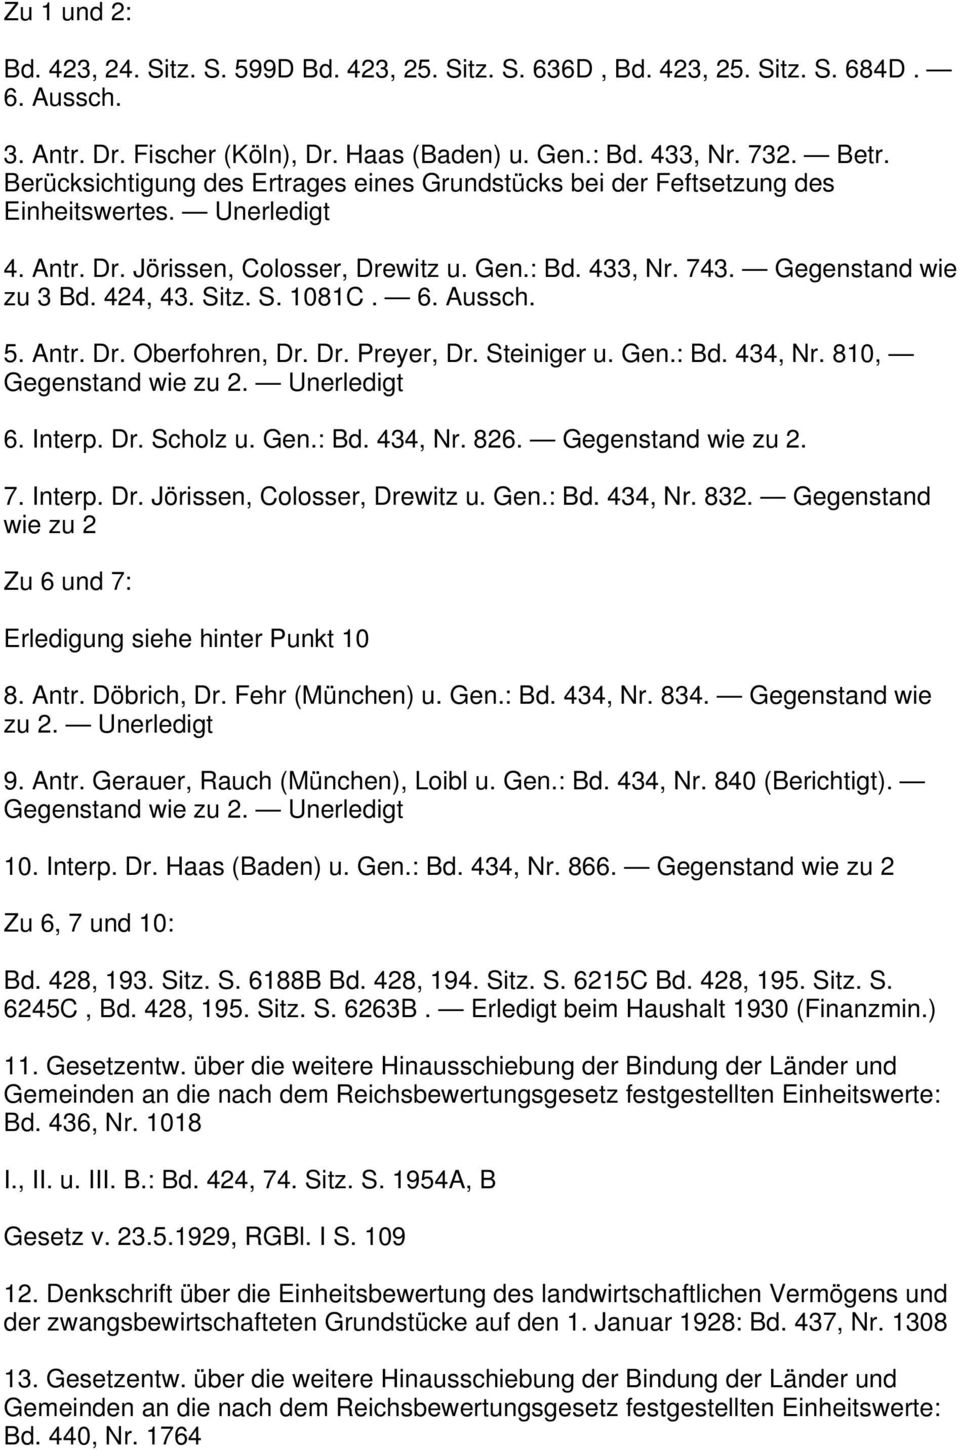 Sitz. S. 1081C. 6. Aussch. 5. Antr. Dr. Oberfohren, Dr. Dr. Preyer, Dr. Steiniger u. Gen.: Bd. 434, Nr. 810, Gegenstand wie zu 2. Unerledigt 6. Interp. Dr. Scholz u. Gen.: Bd. 434, Nr. 826.